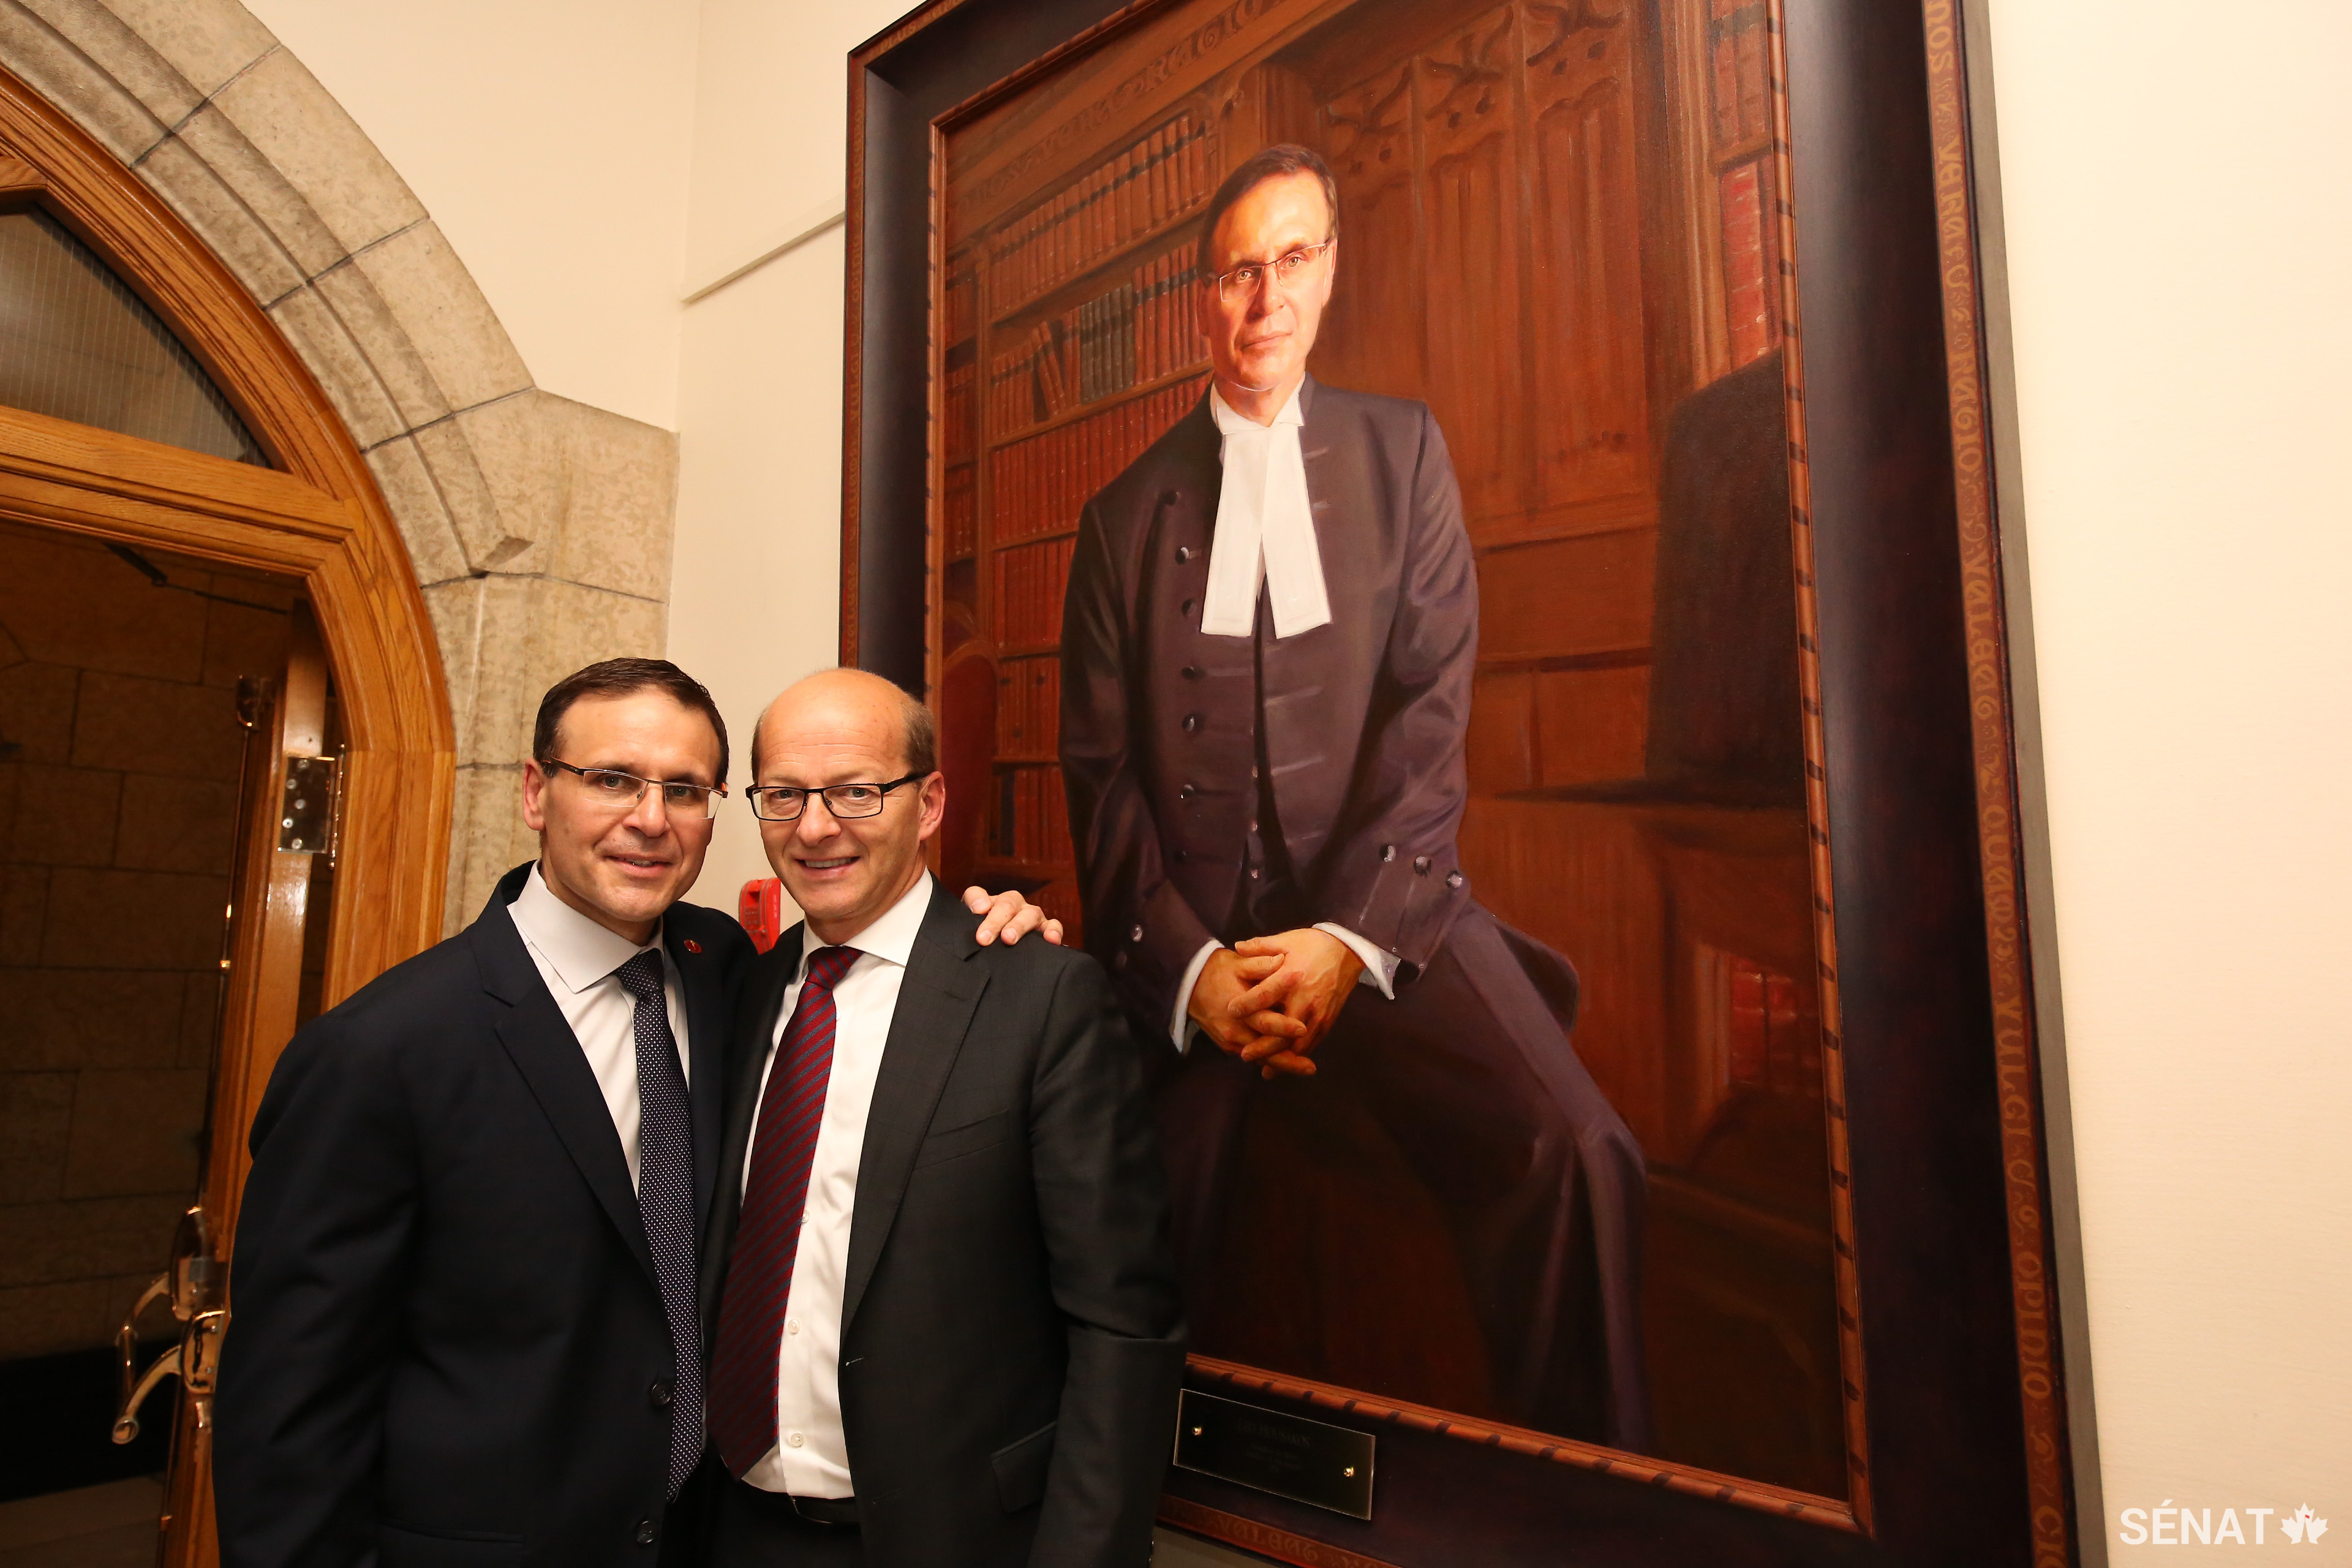 Le sénateur Housakos, à gauche, partage un moment avec son ami et collègue, le sénateur Claude Carignan, peu de temps après que le portrait commémorant le mandat du sénateur Leo Housakos à titre de Président du Sénat ait été suspendu au mur du Parlement.